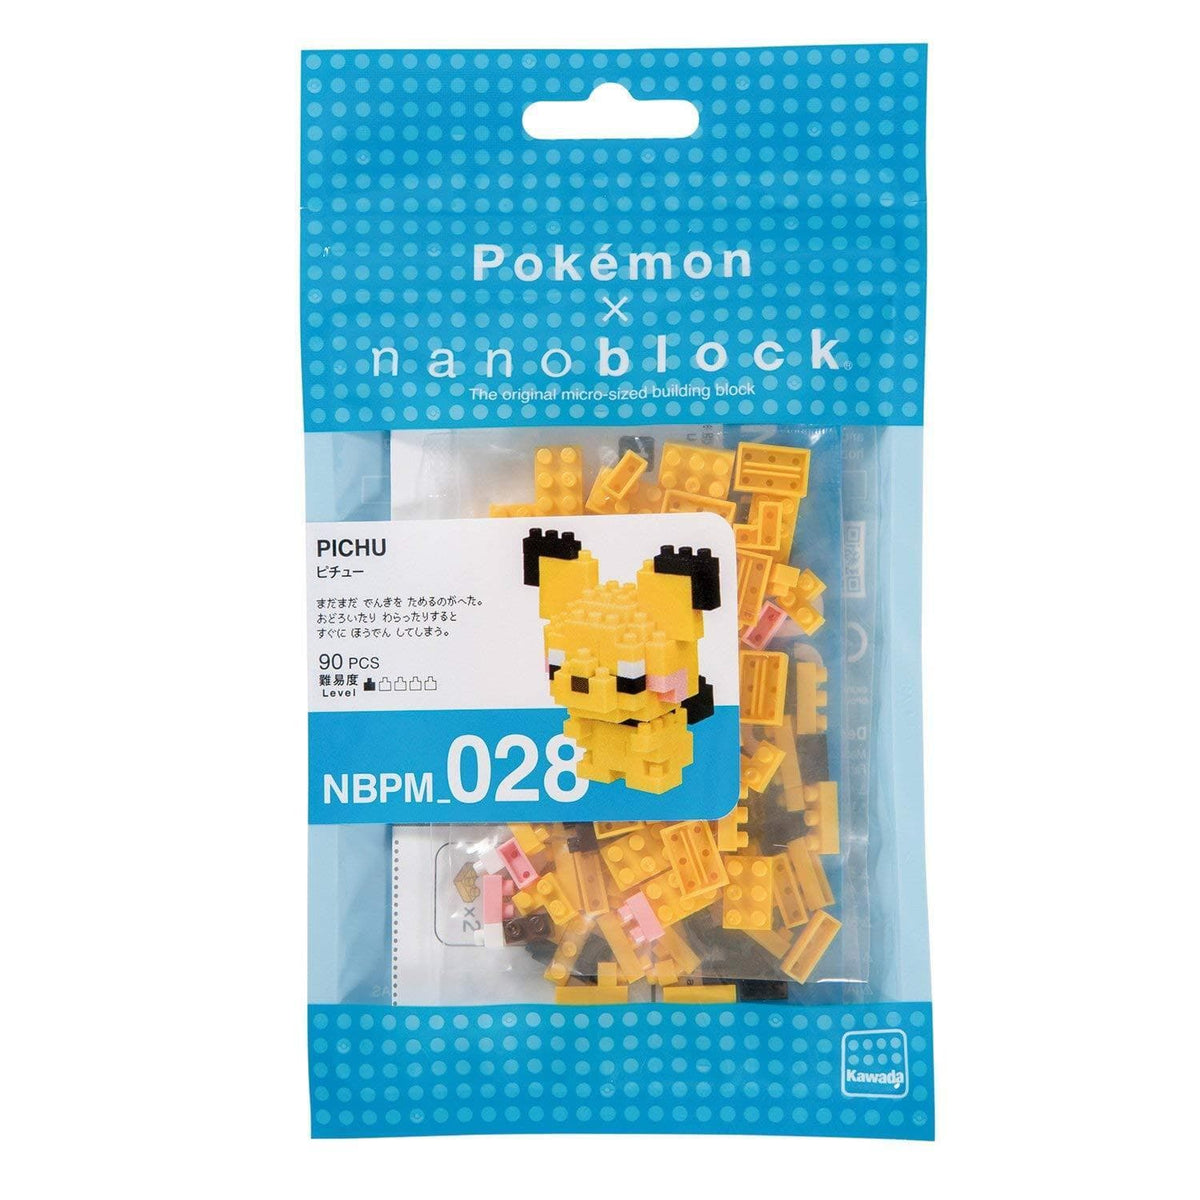 Nanoblock: Pokemon - Pichu